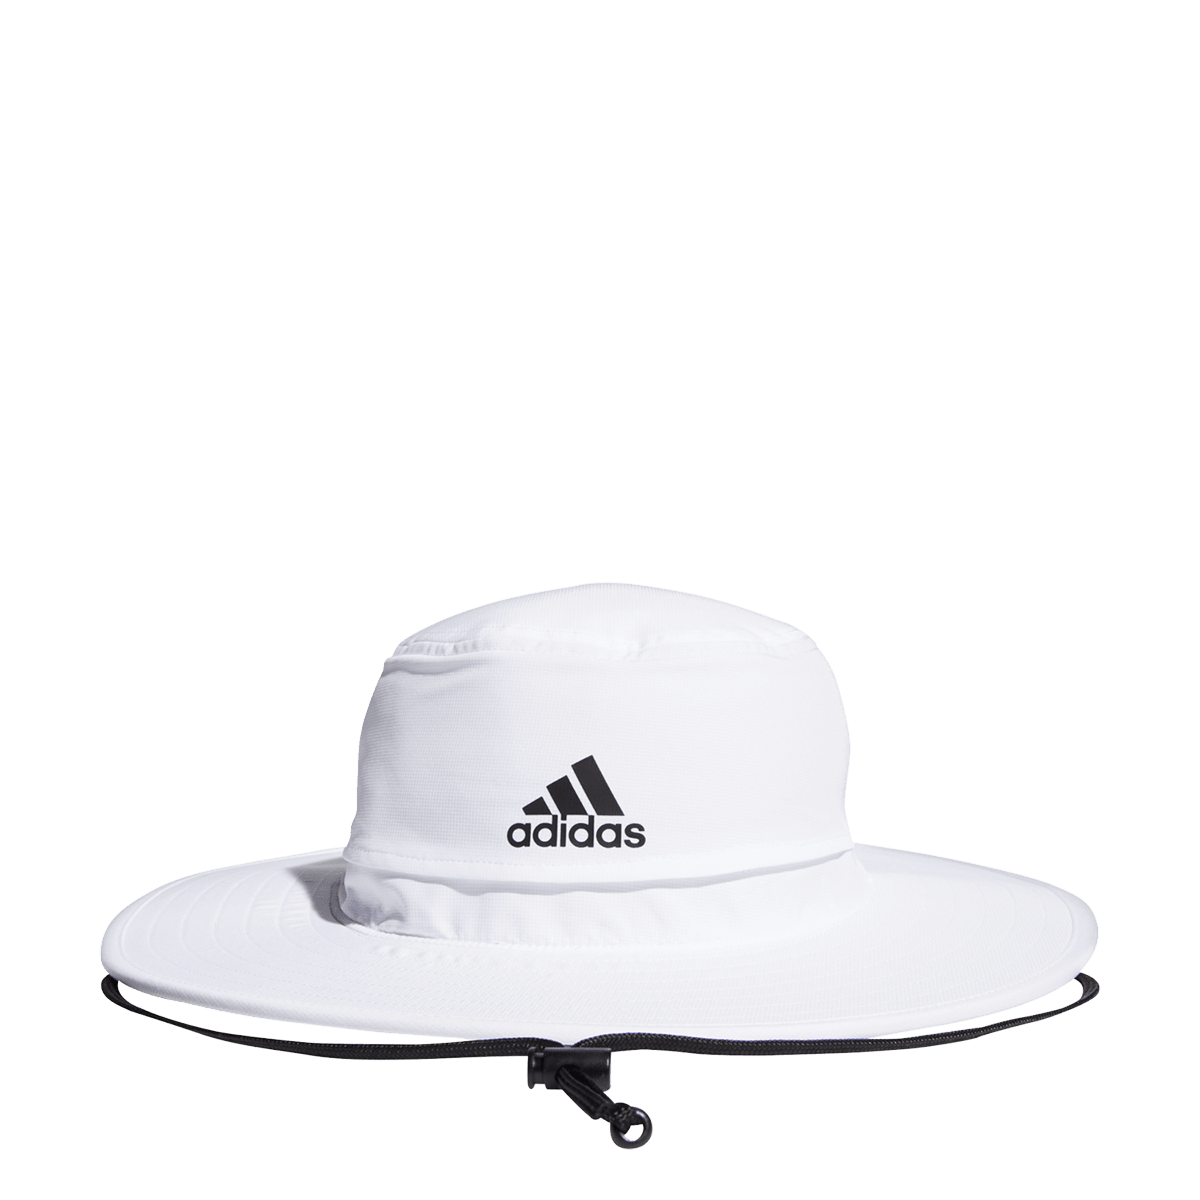 adidas golf hat